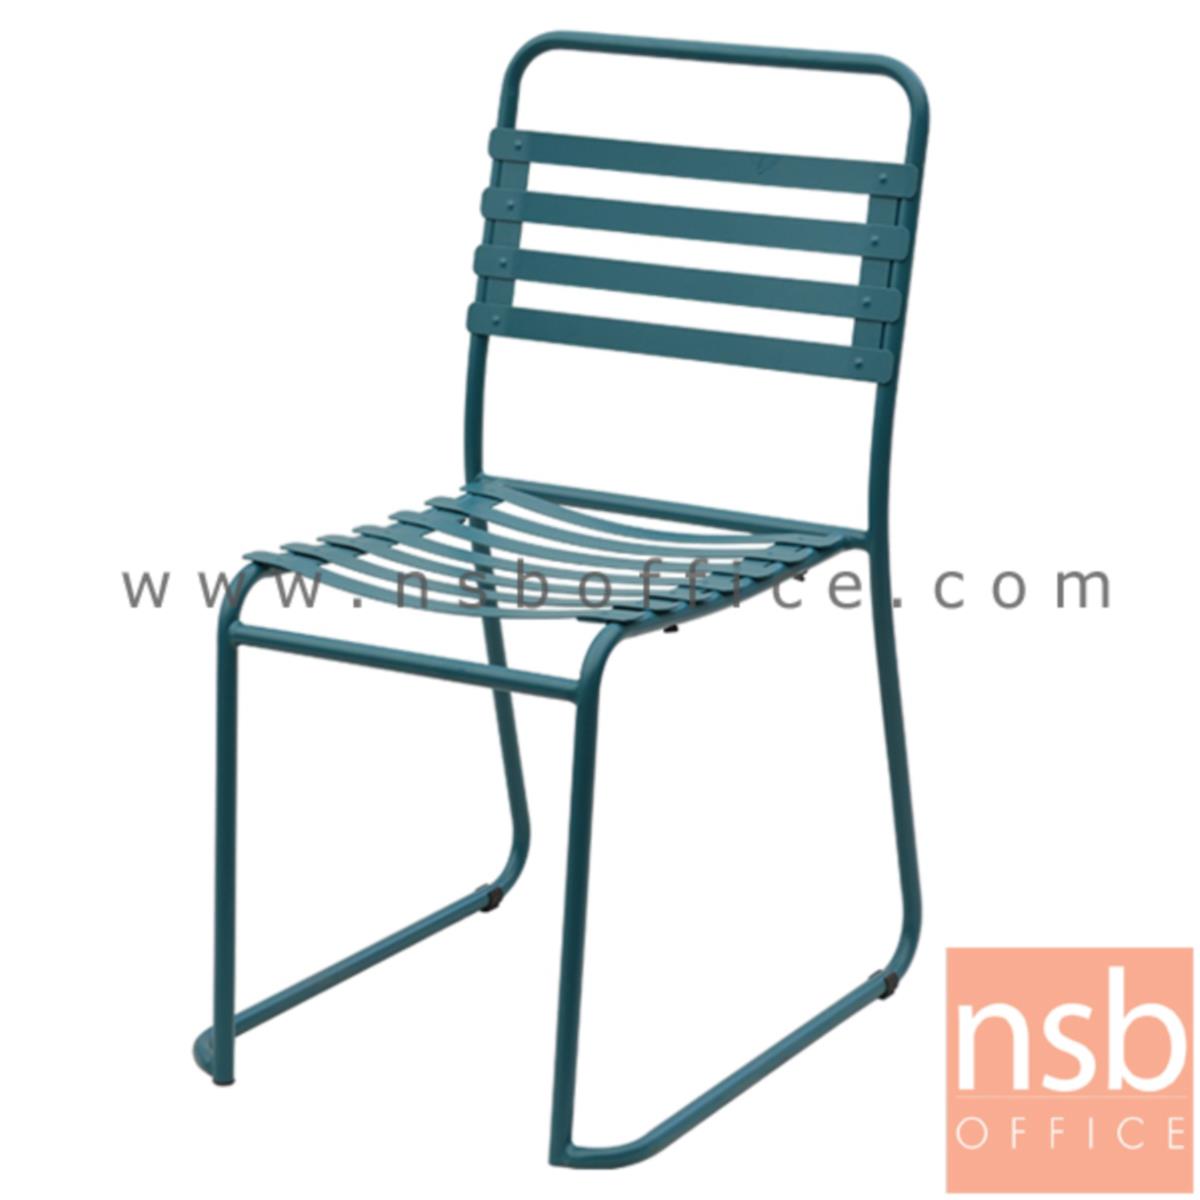 B29A265:เก้าอี้โมเดิร์นเหล็ก รุ่น PC-06922 ขนาด 46W cm. โครงขาเหล็ก